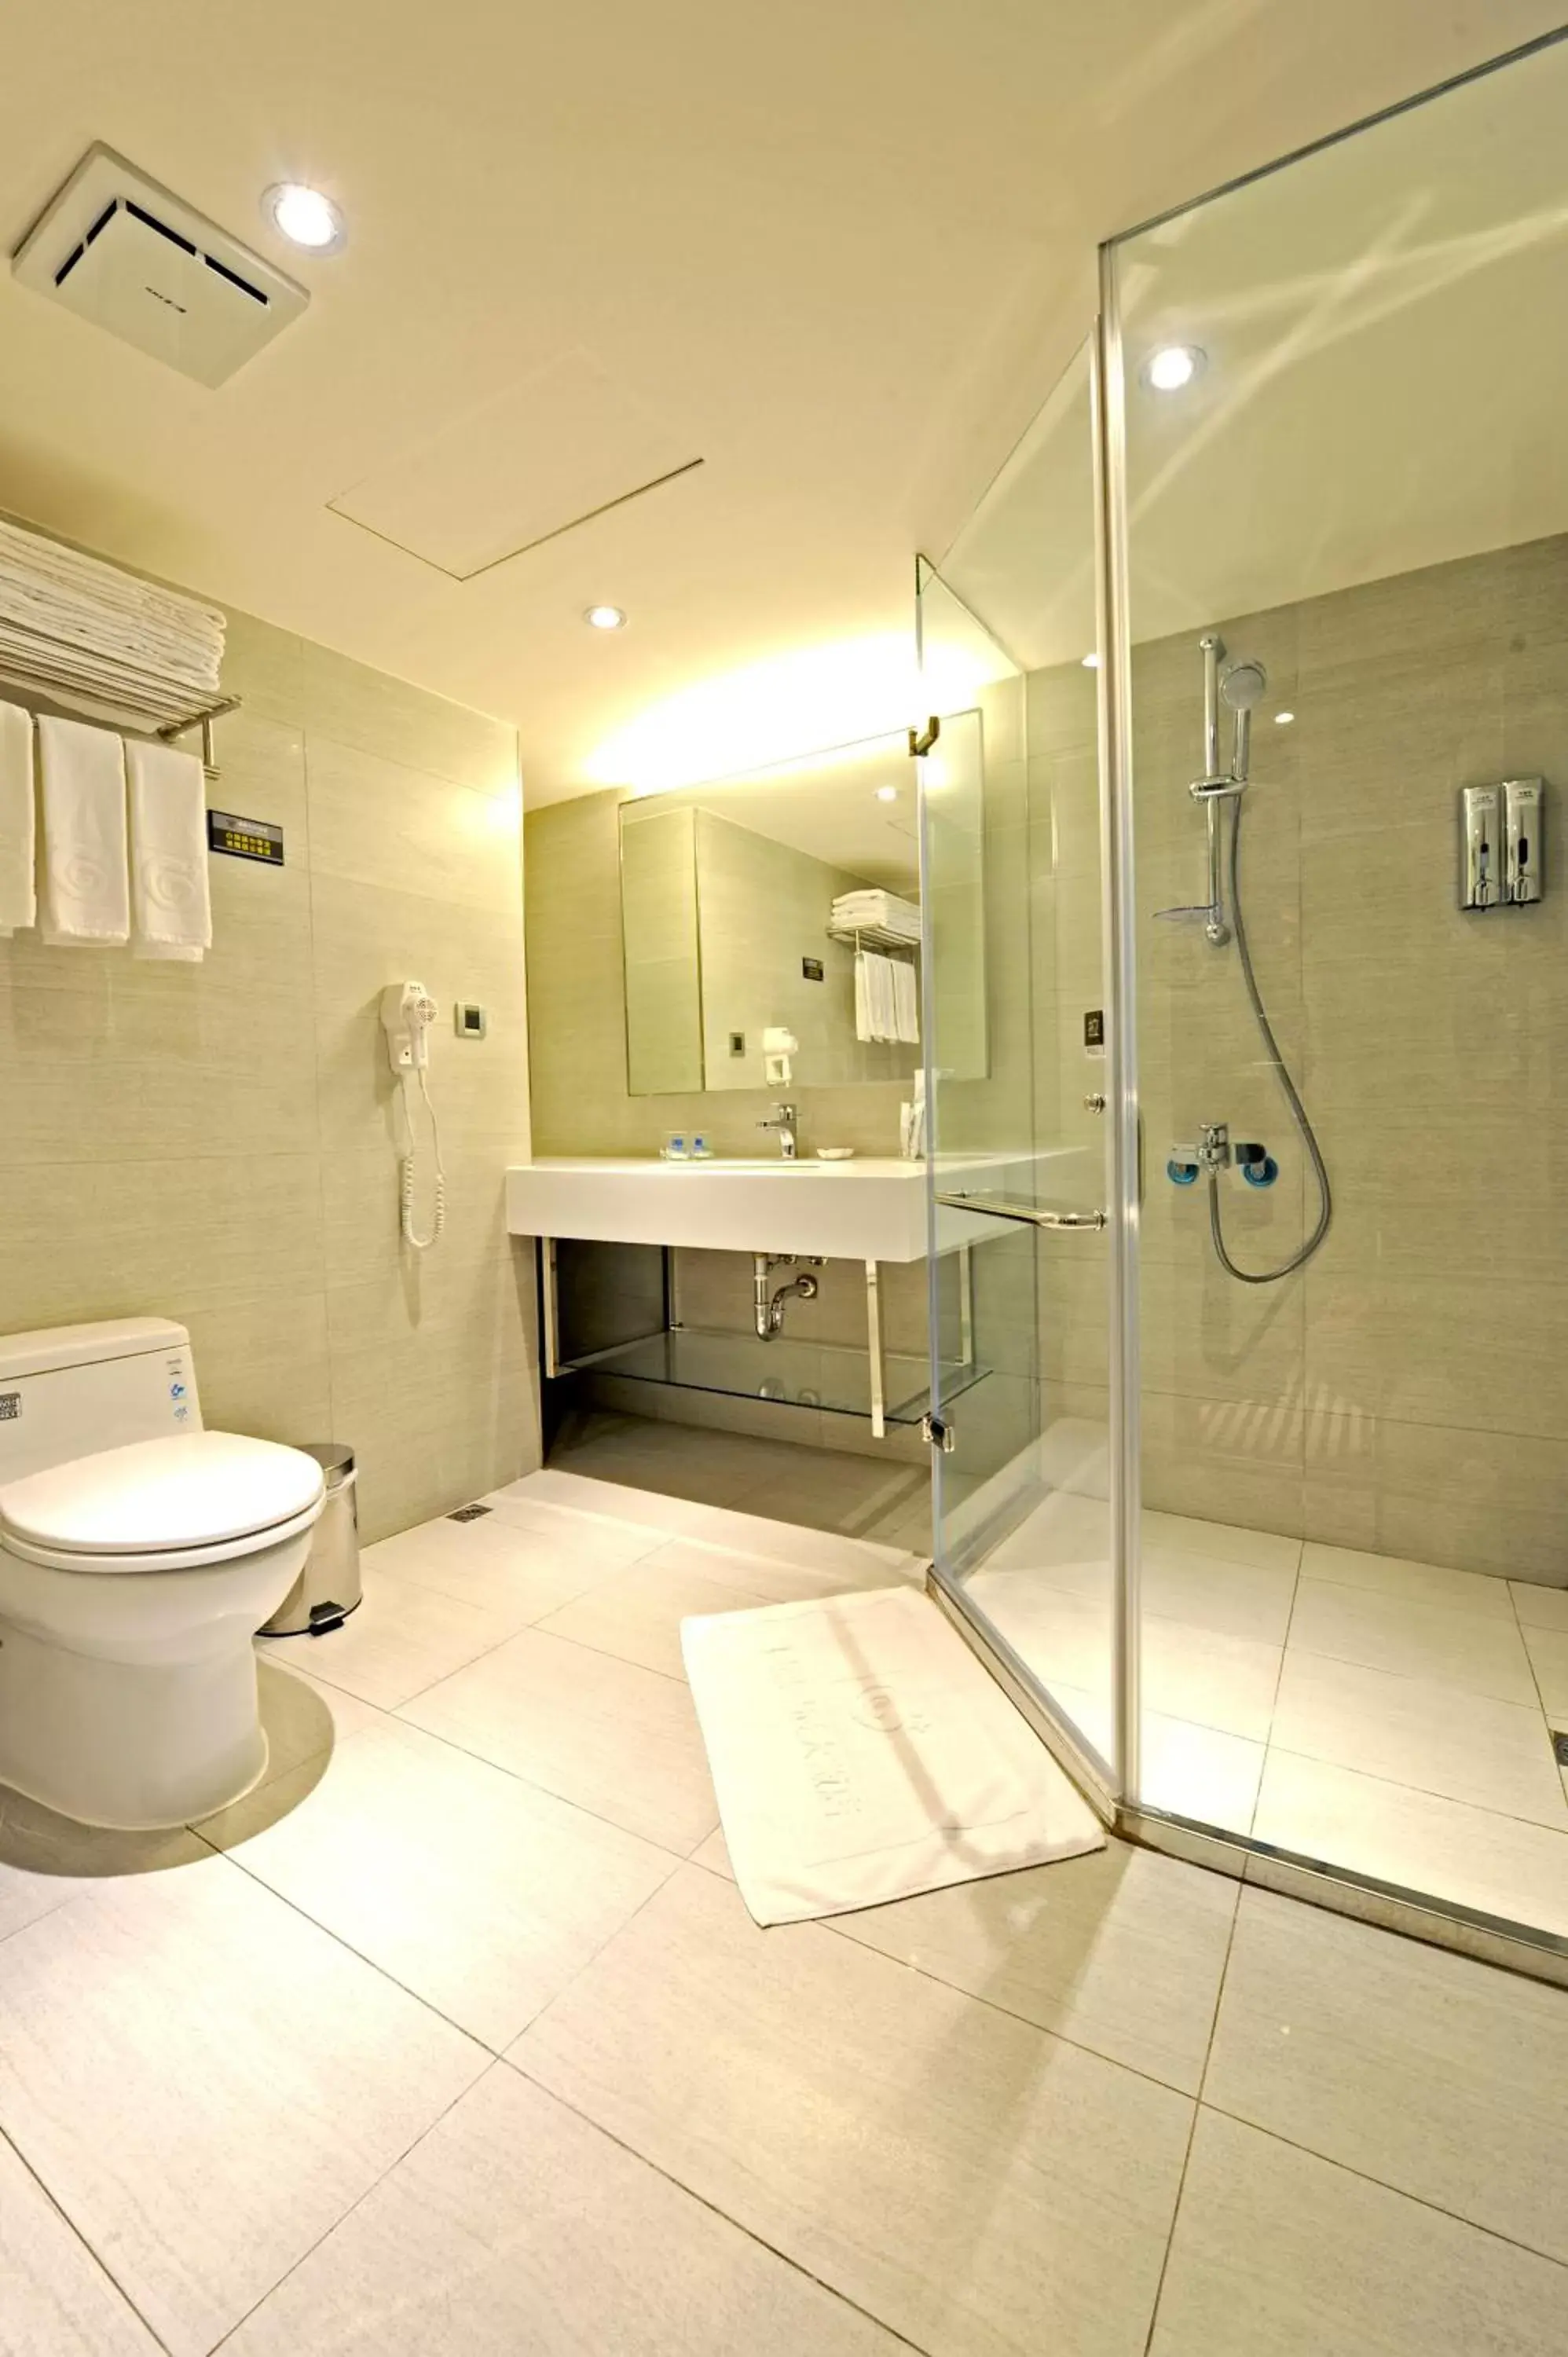 Shower, Bathroom in International Citizen Hotel